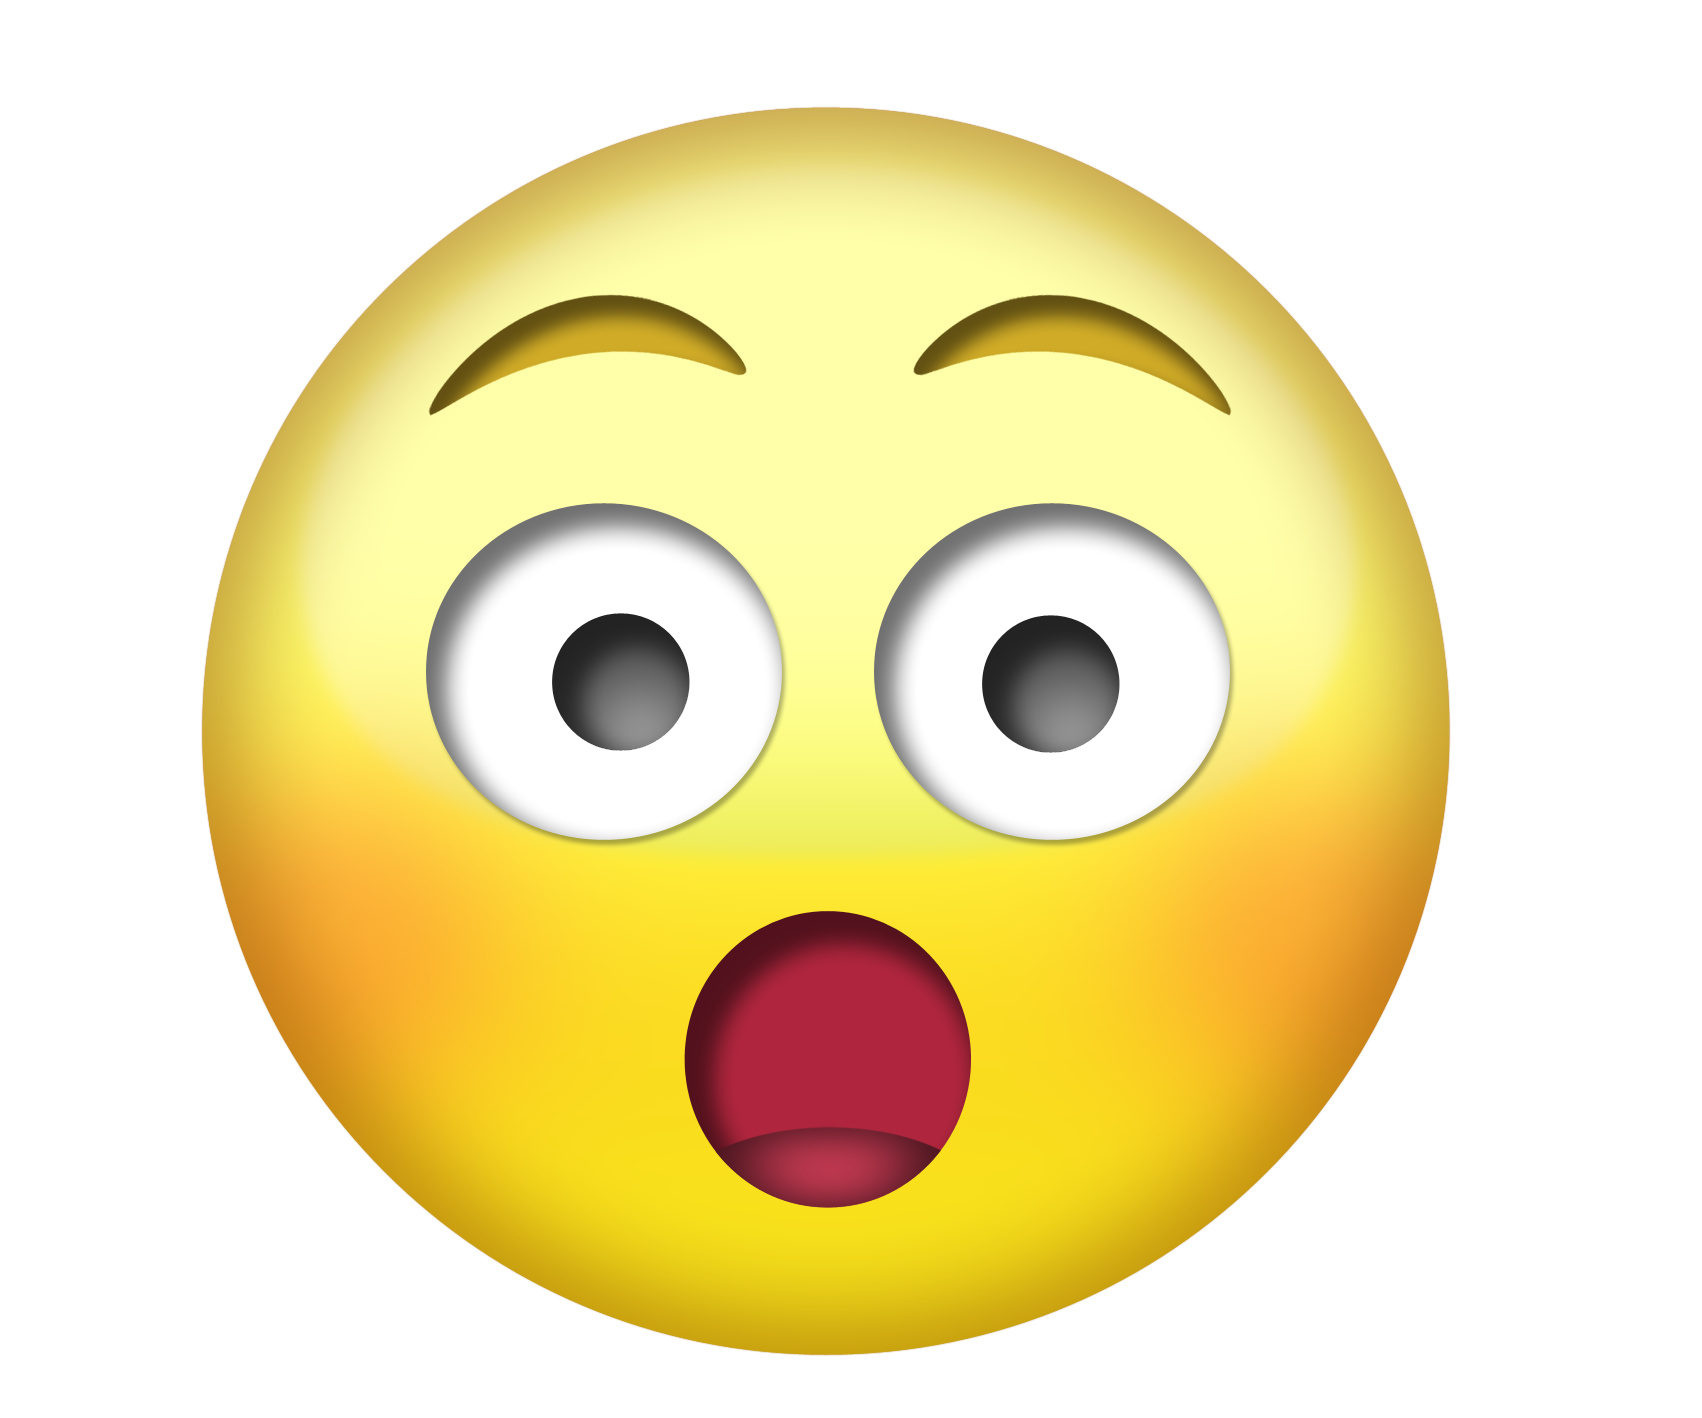 Download PNG image - Emoji Head Transparent PNG 